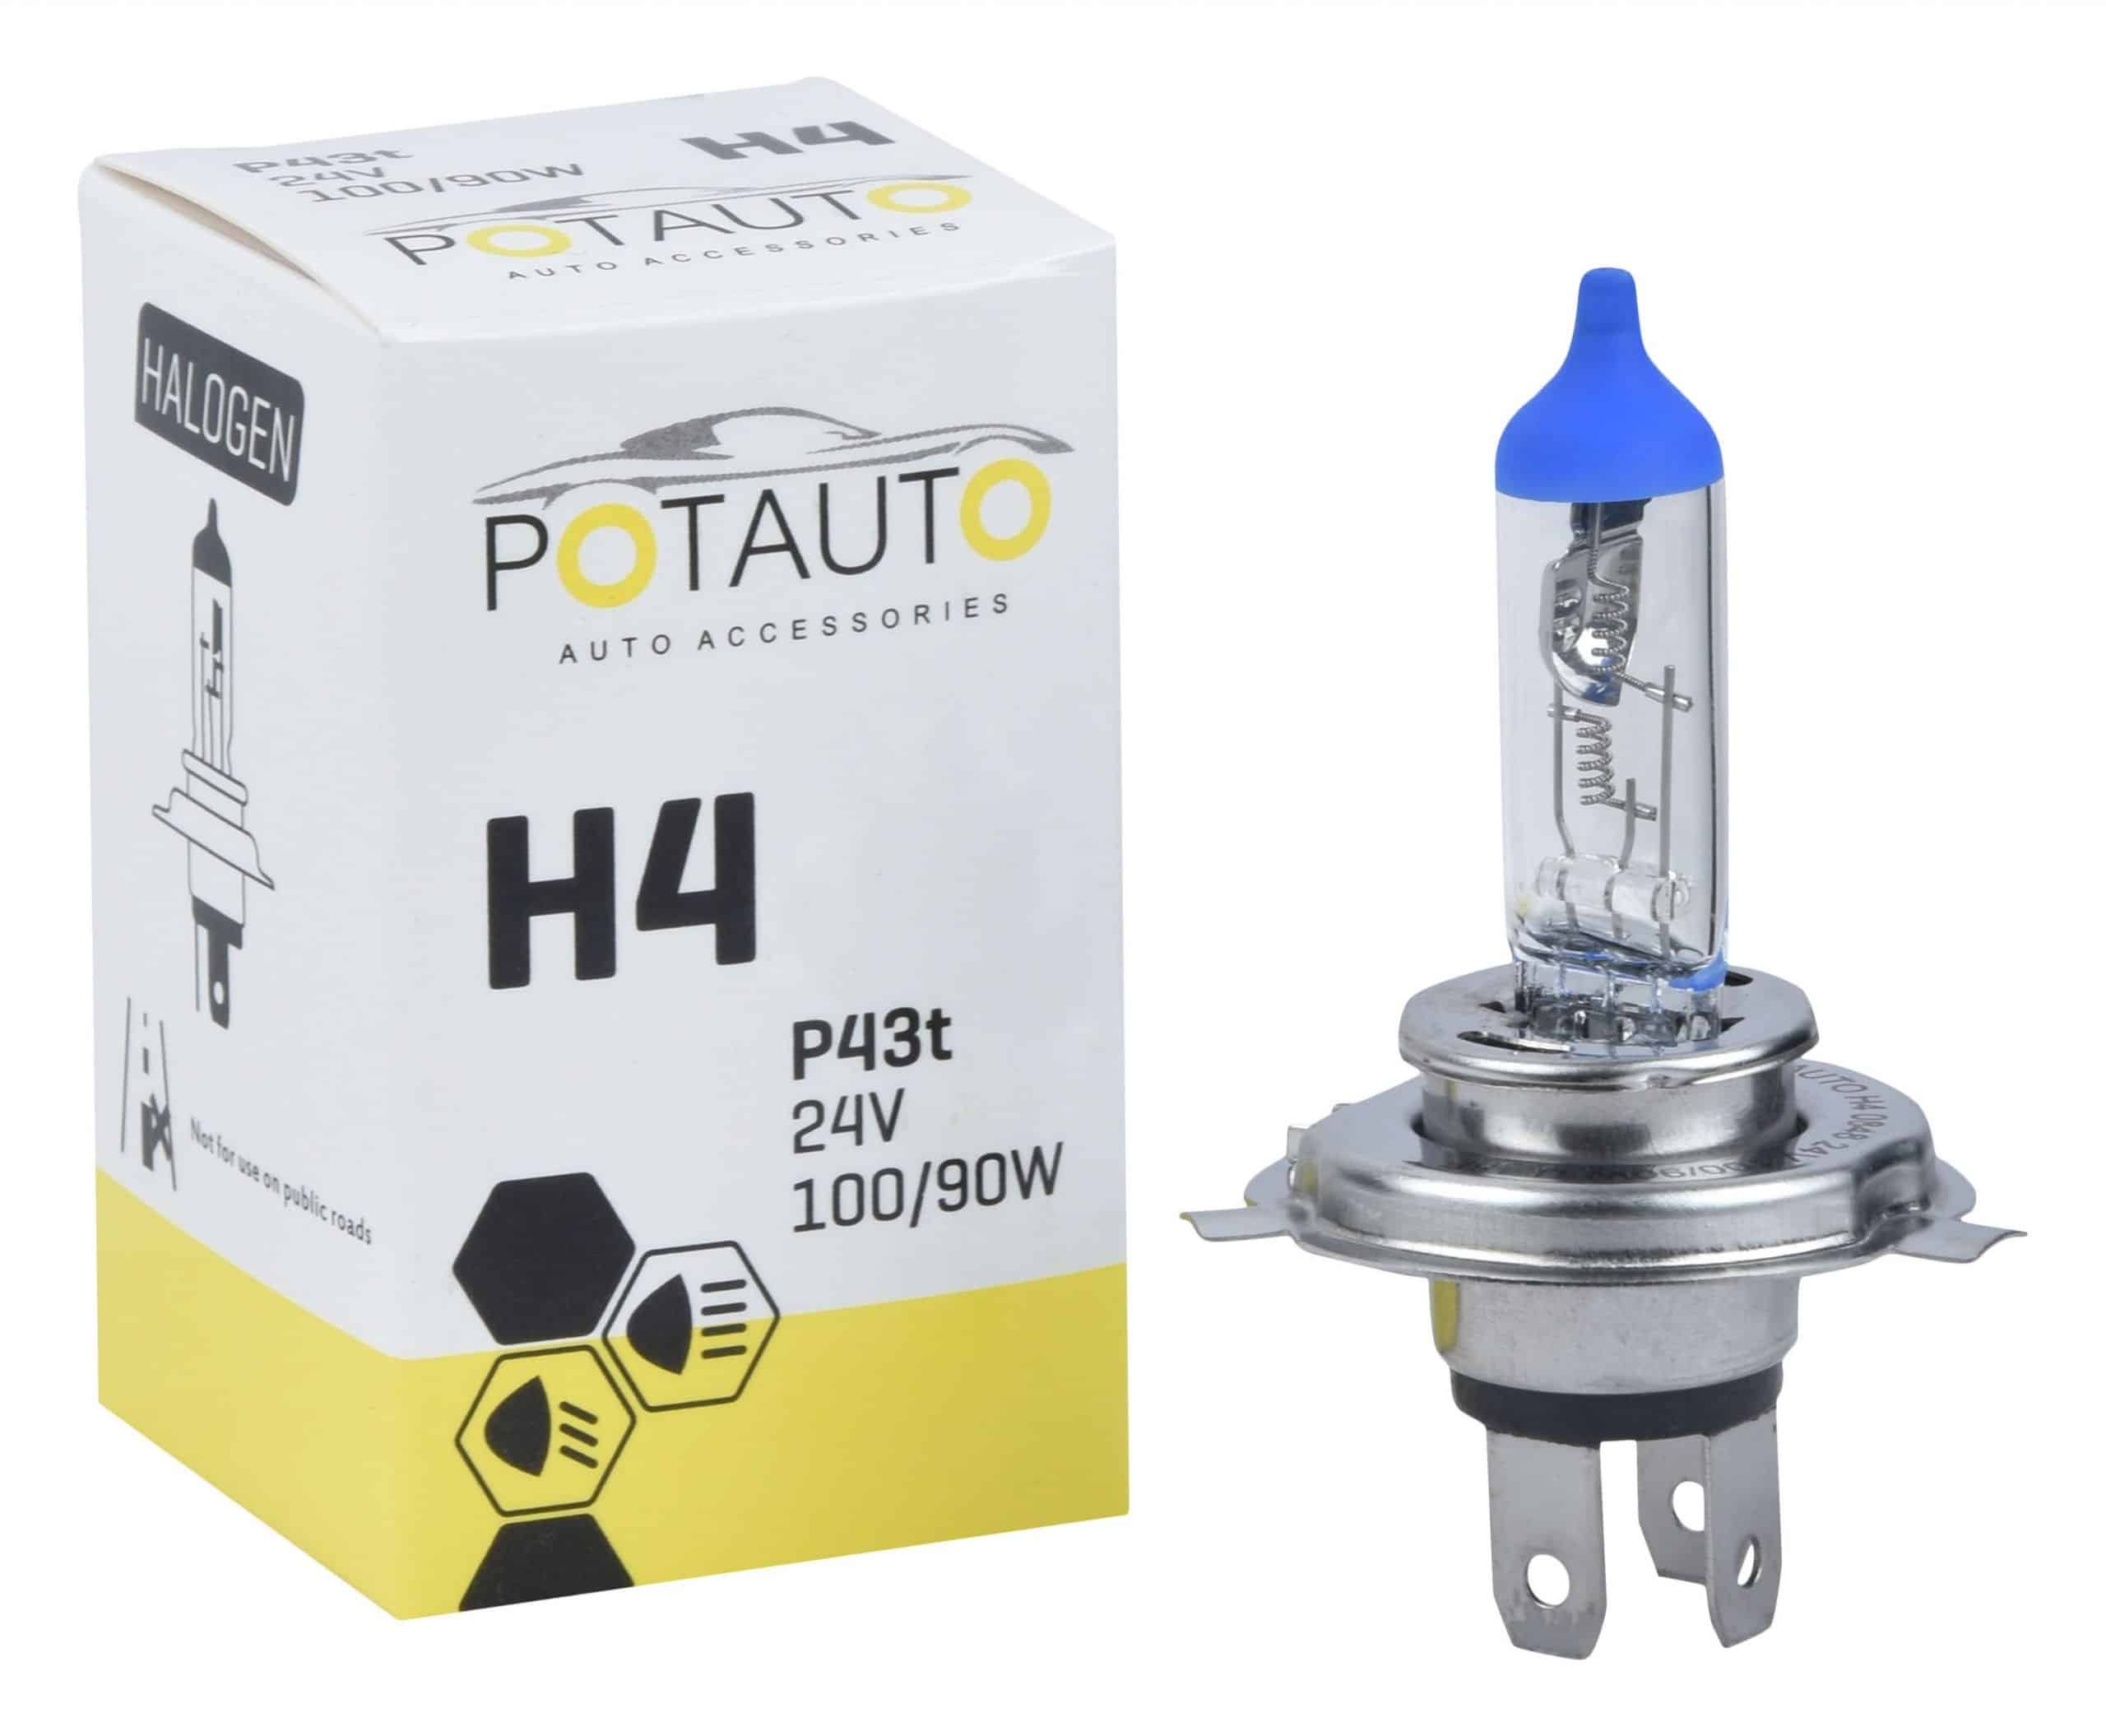 Potauto H4 Headlight Bulb P43t 24V 100/90W